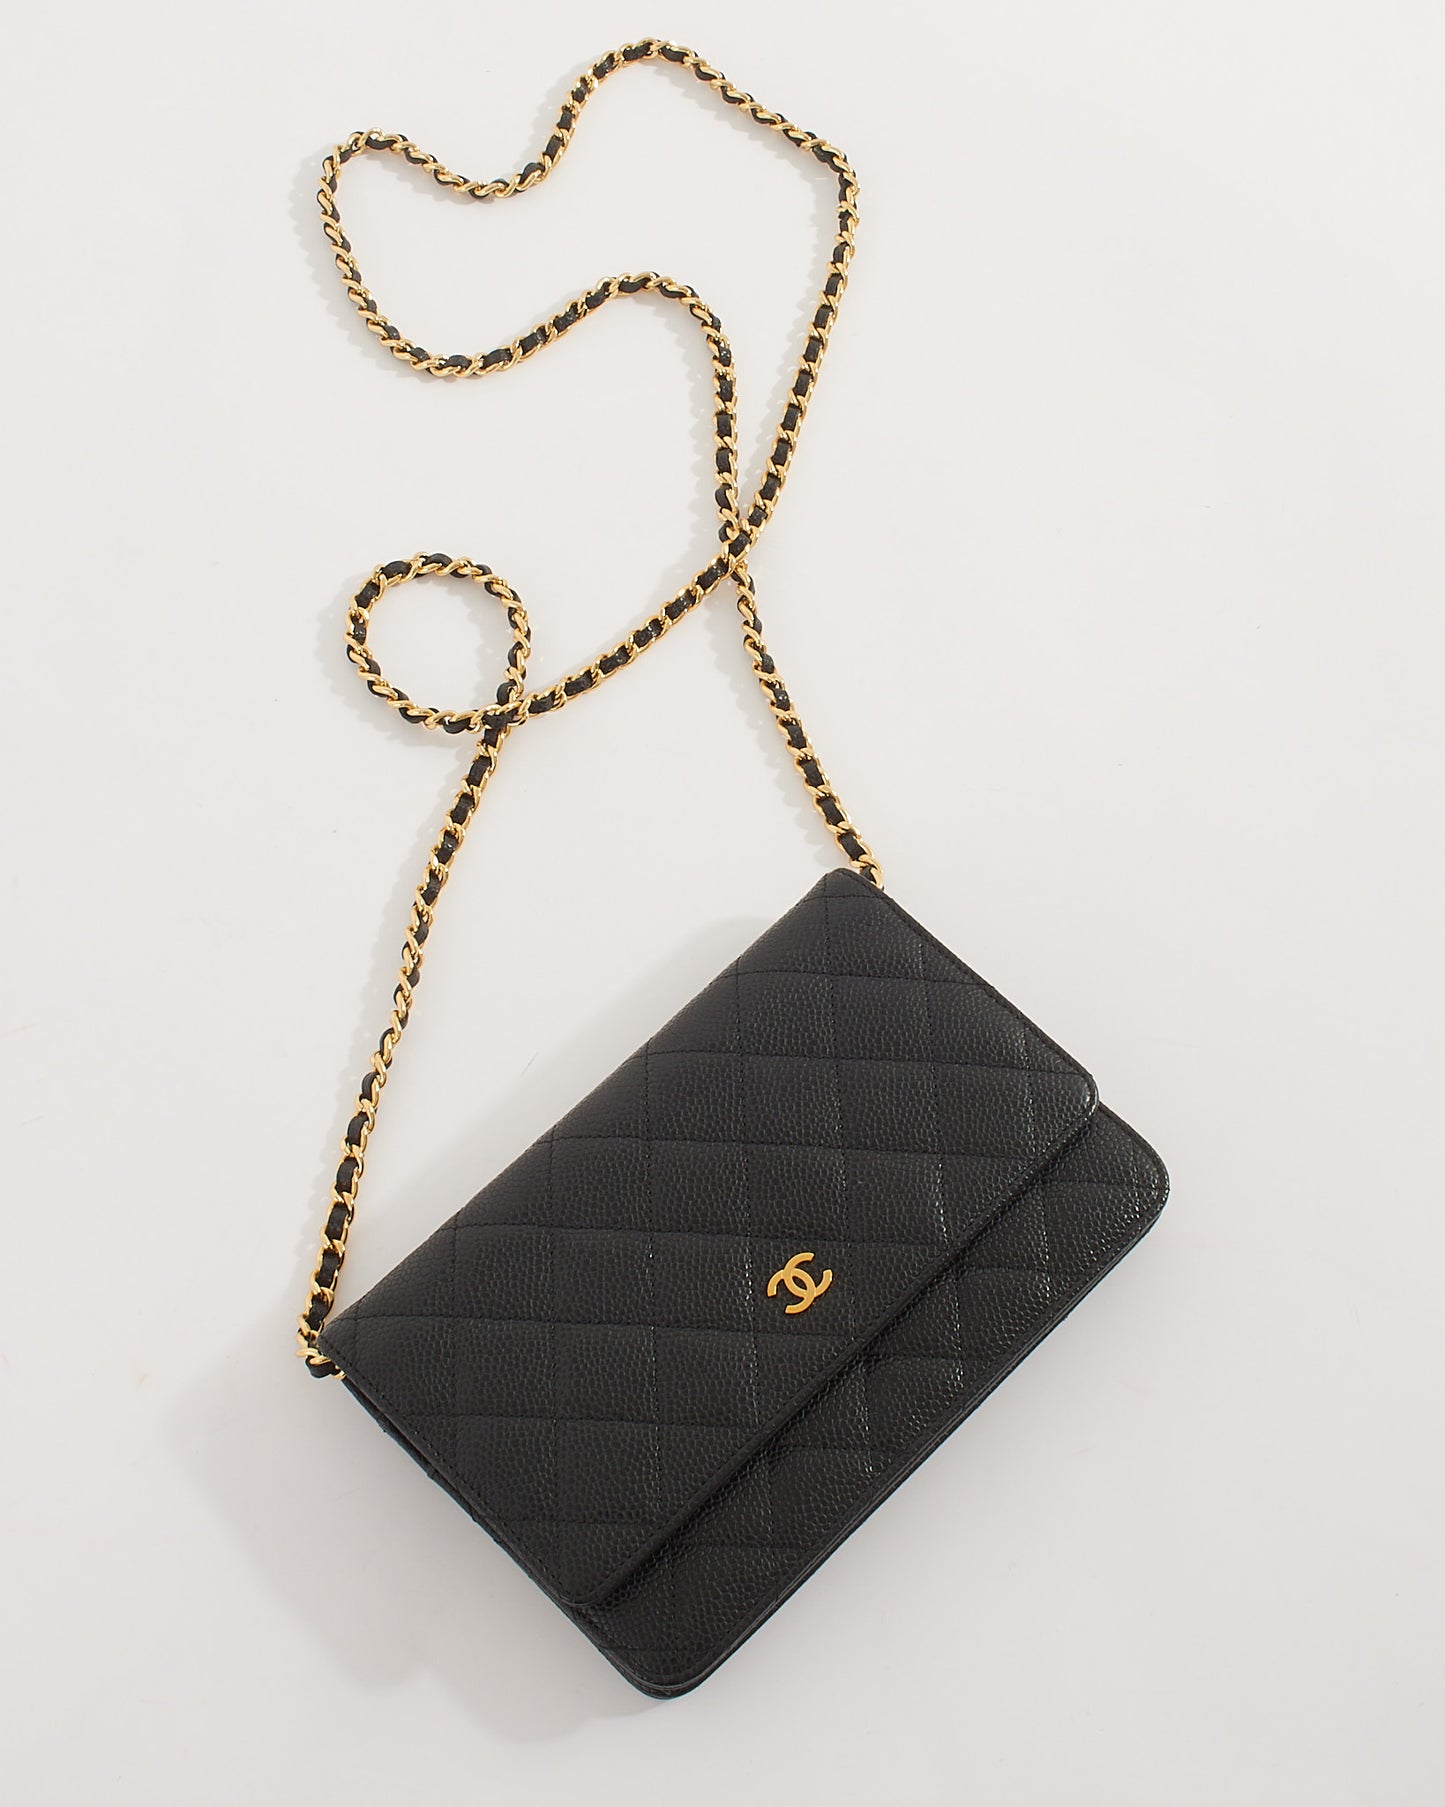 Portefeuille en cuir caviar noir Chanel avec matériel doré sur chaîne